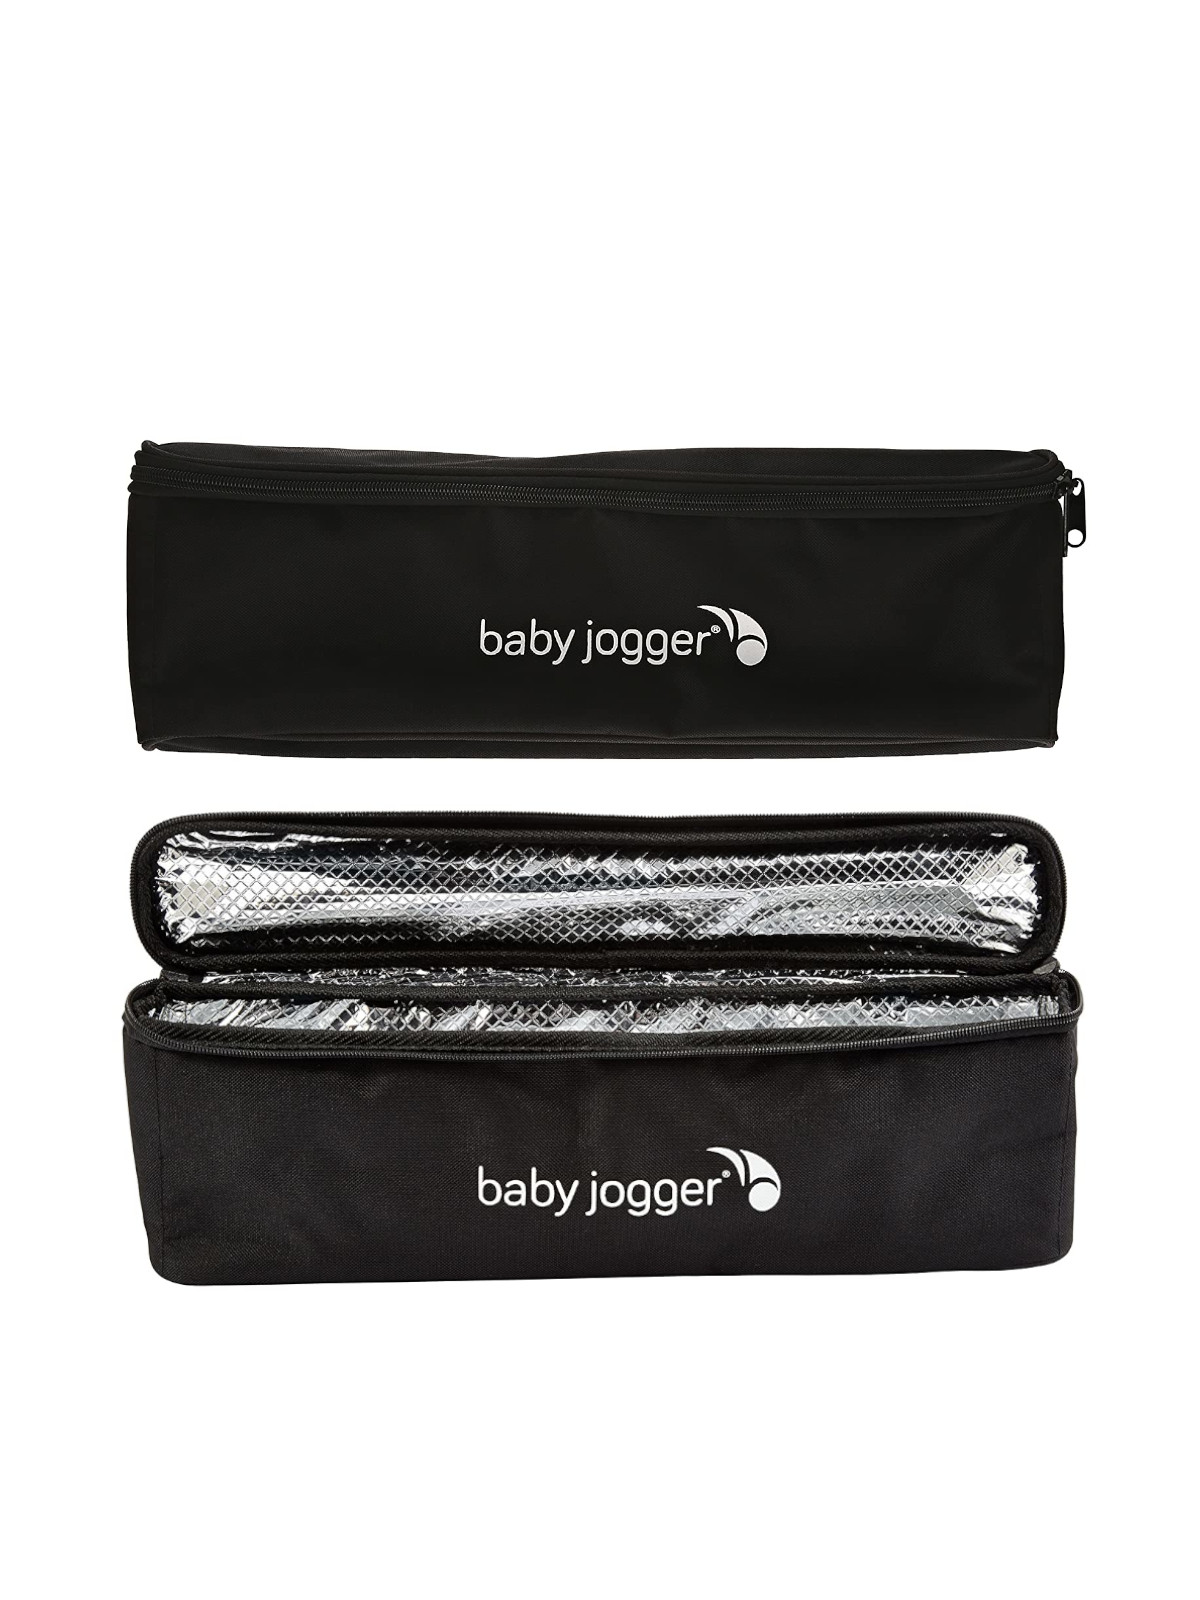 Baby jogger borsa termica cooler bag - nera - Baby jogger